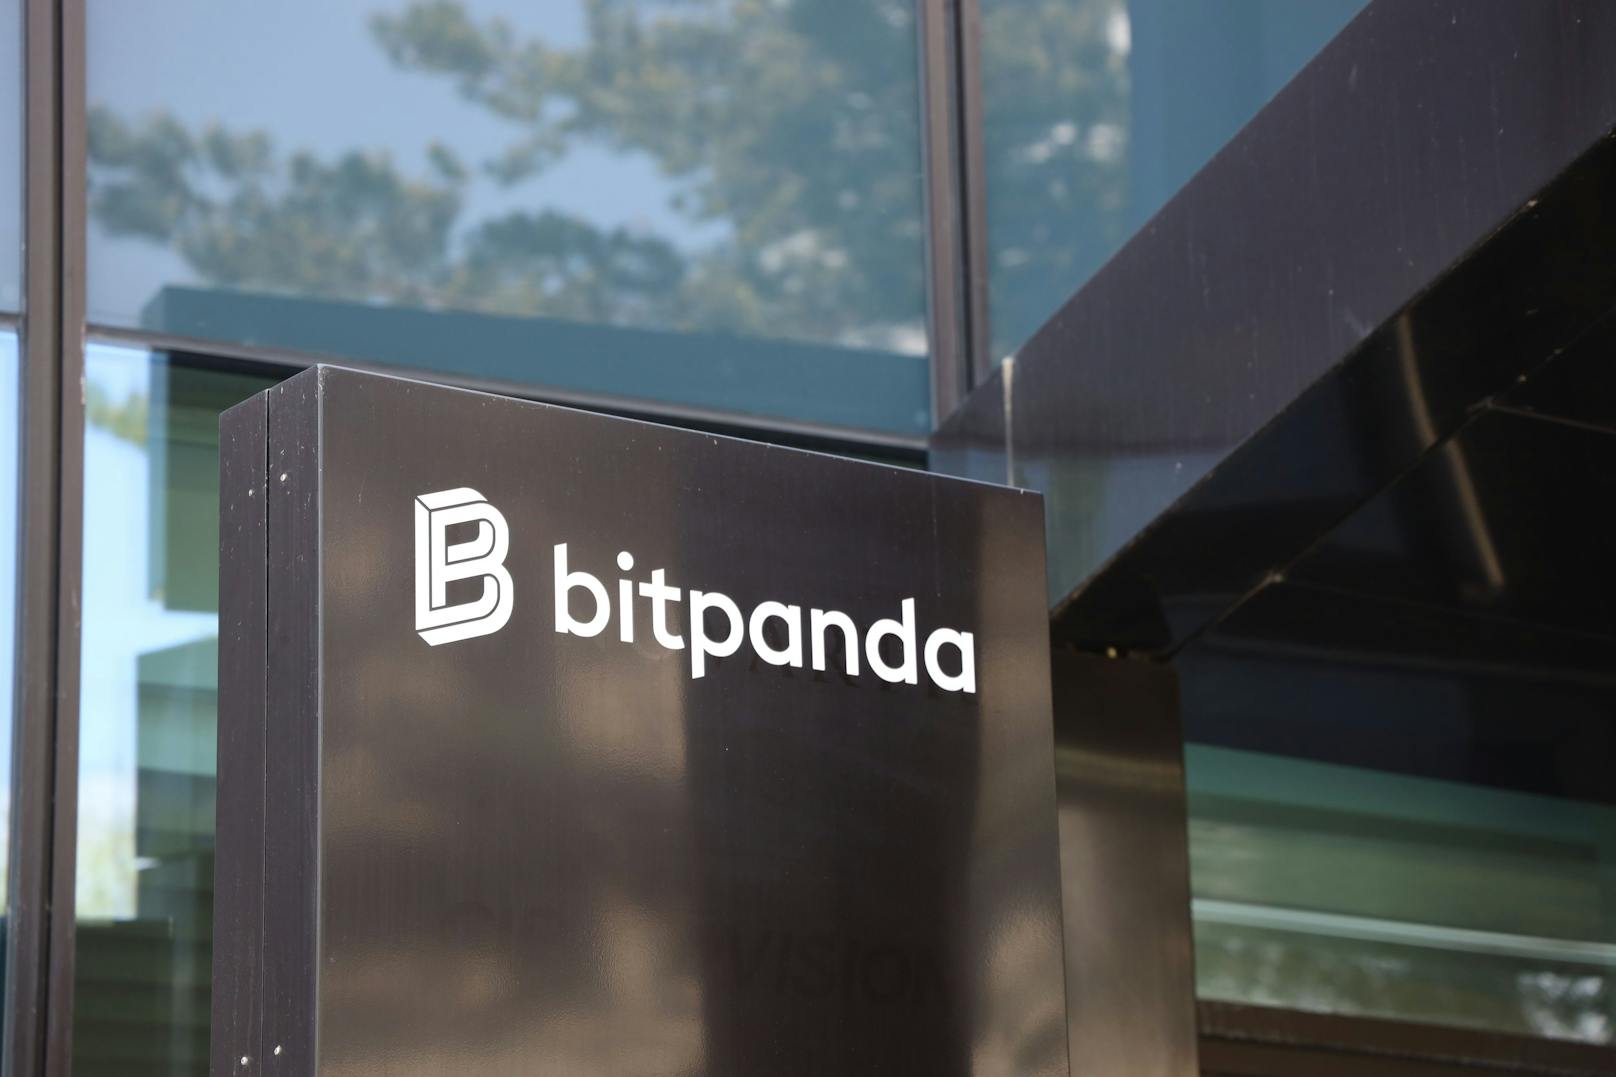 Über 1.000 Personen waren zuletzt bei Bitpanda beschäftigt, künftig sollen es nur noch 730 sein.